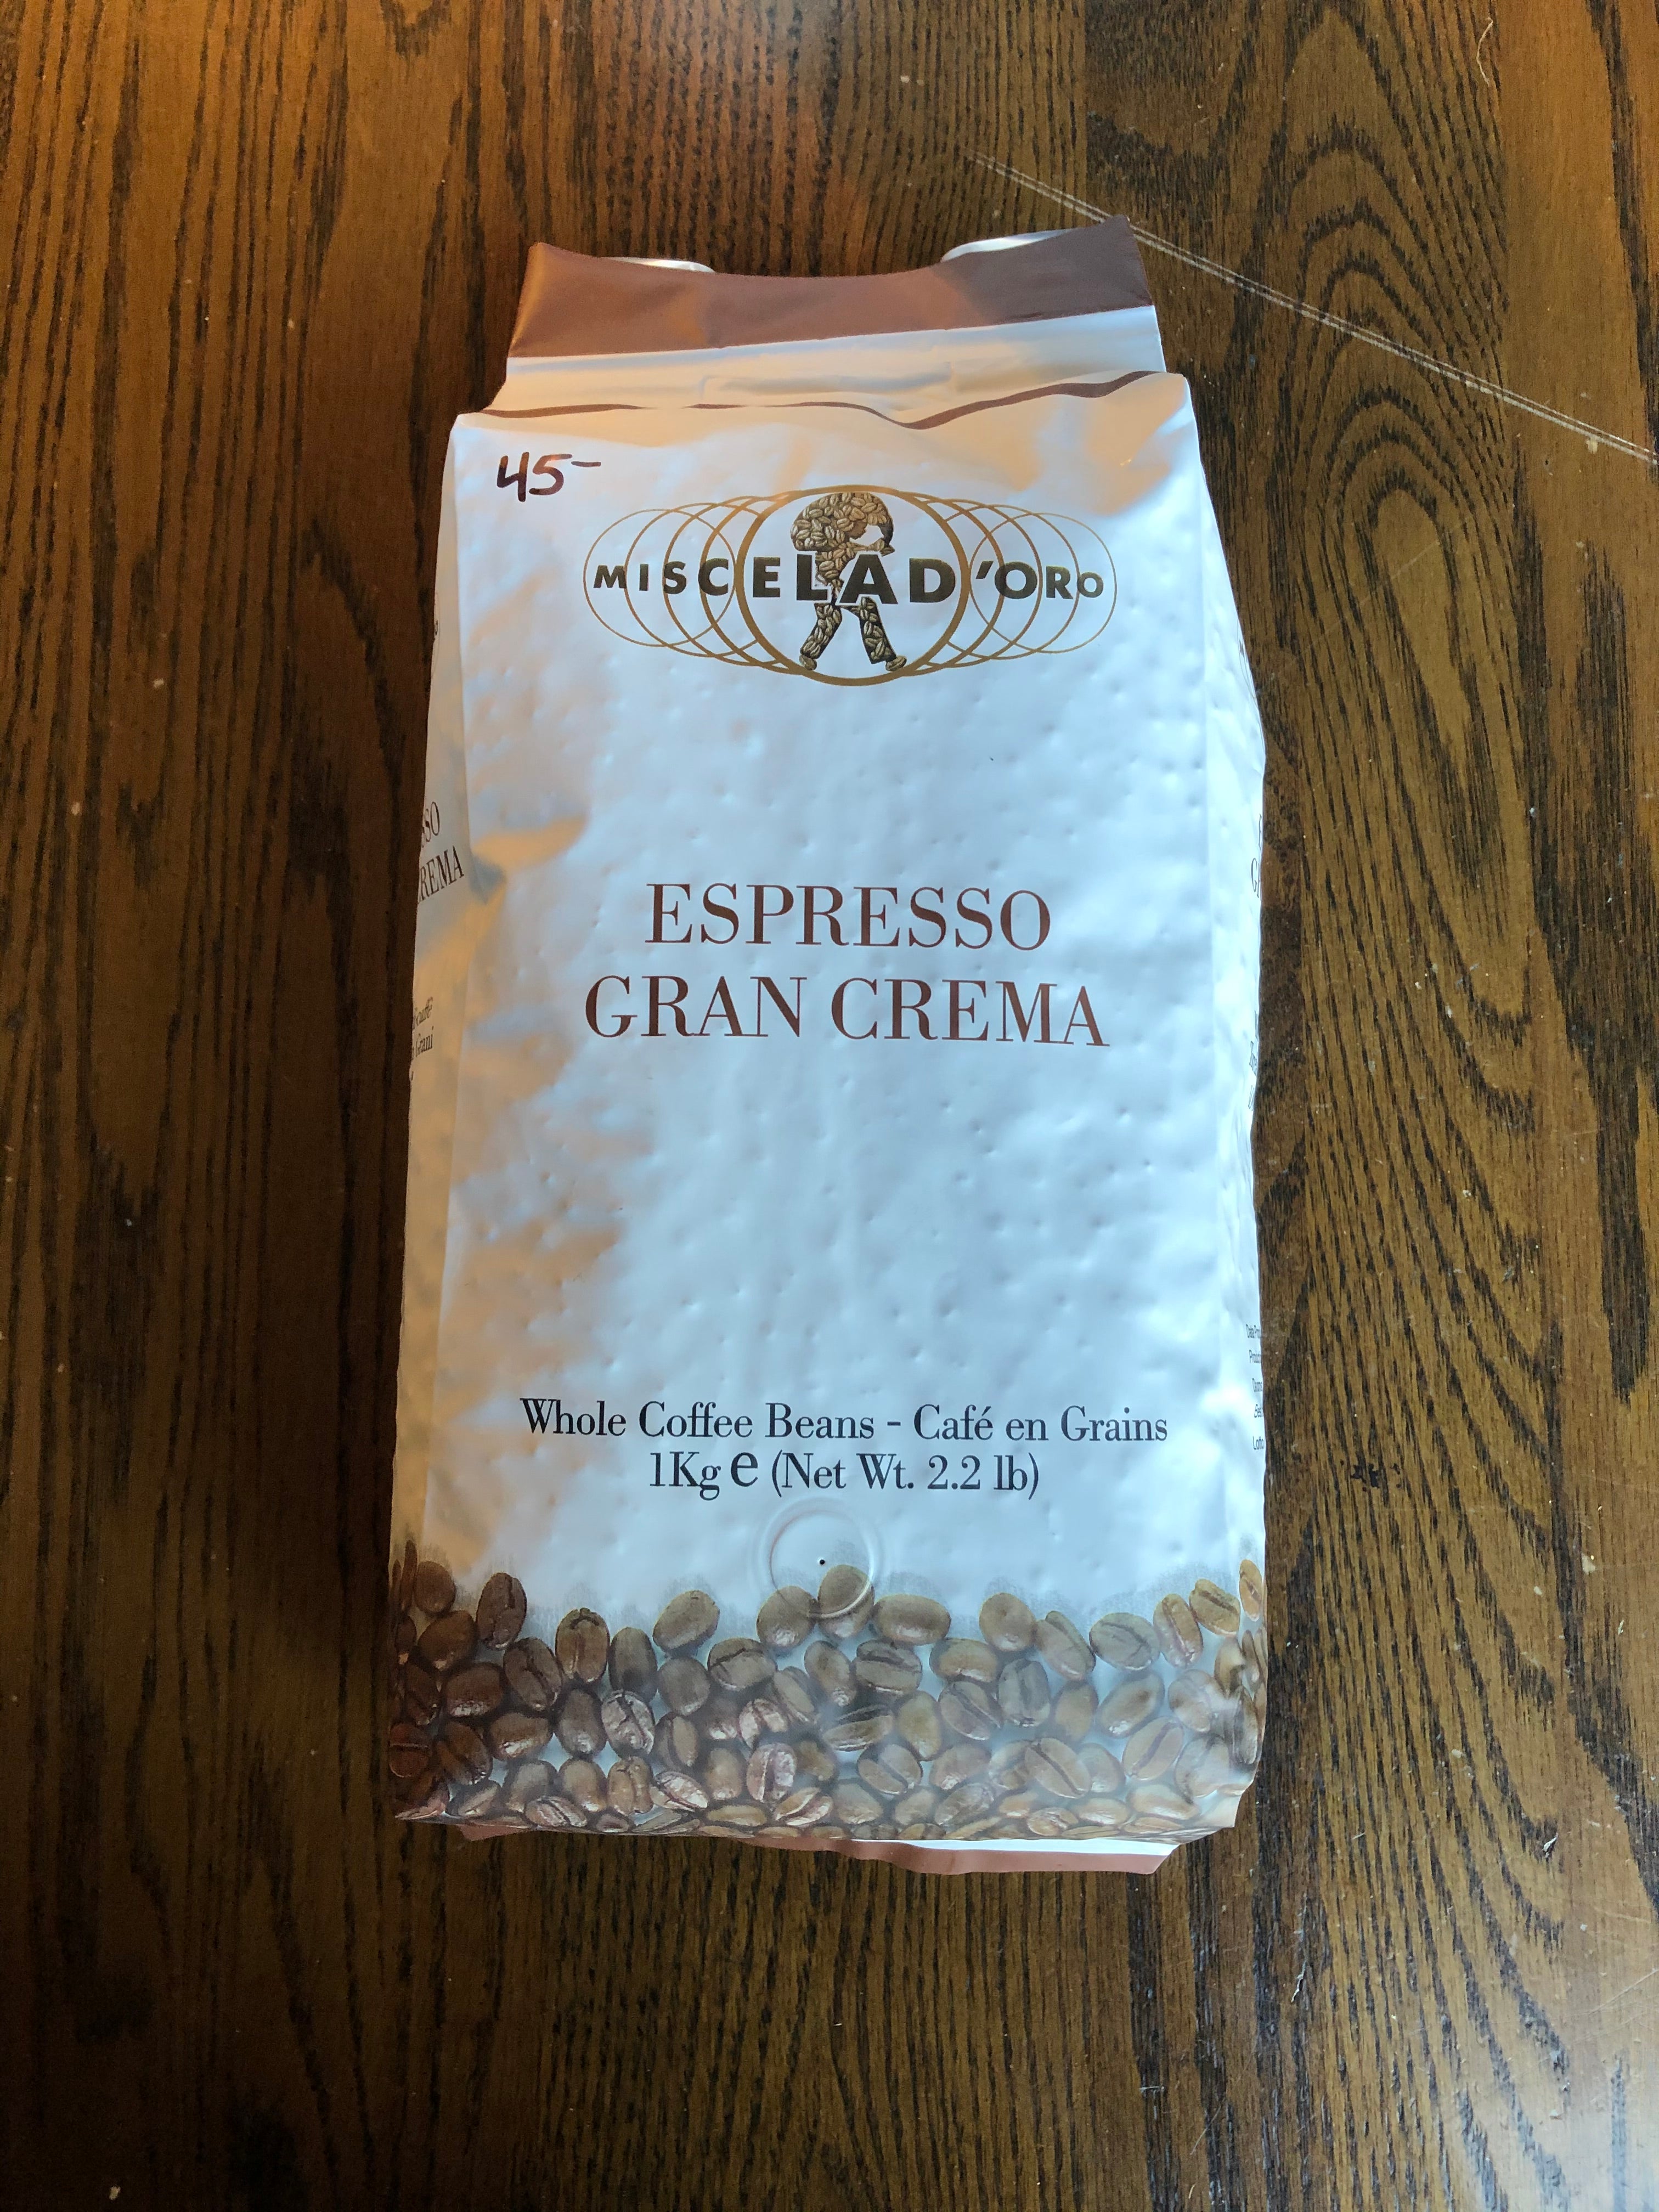 Coffee Miscelad'Oro Gran Crema Espresso